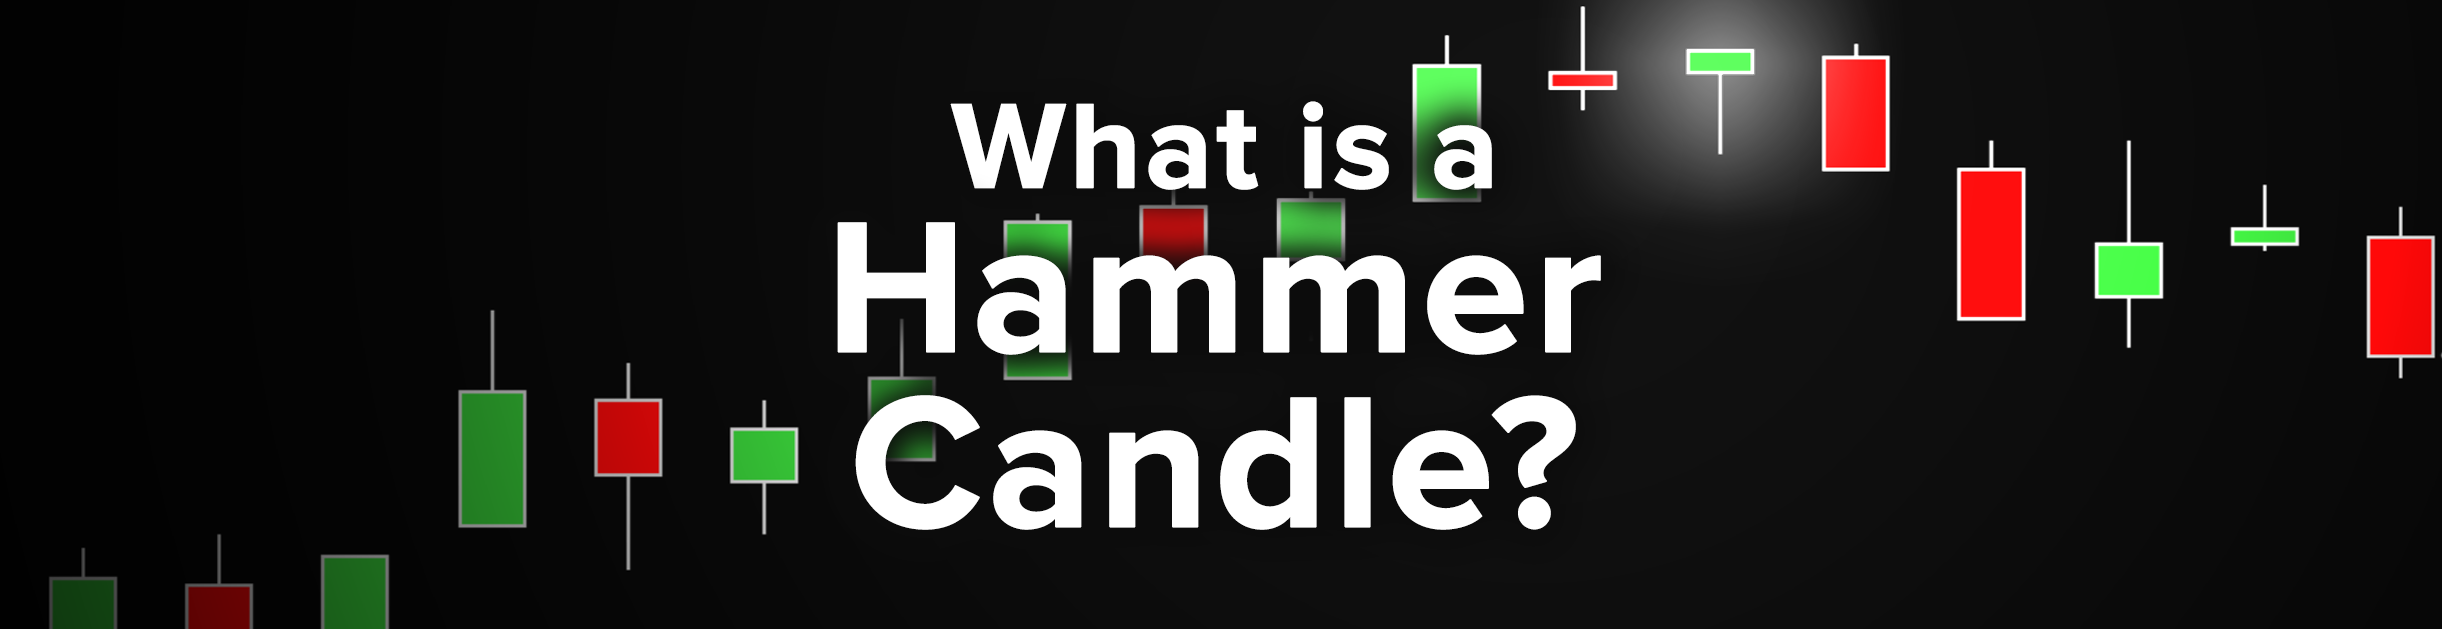 Hammer candlestick chart